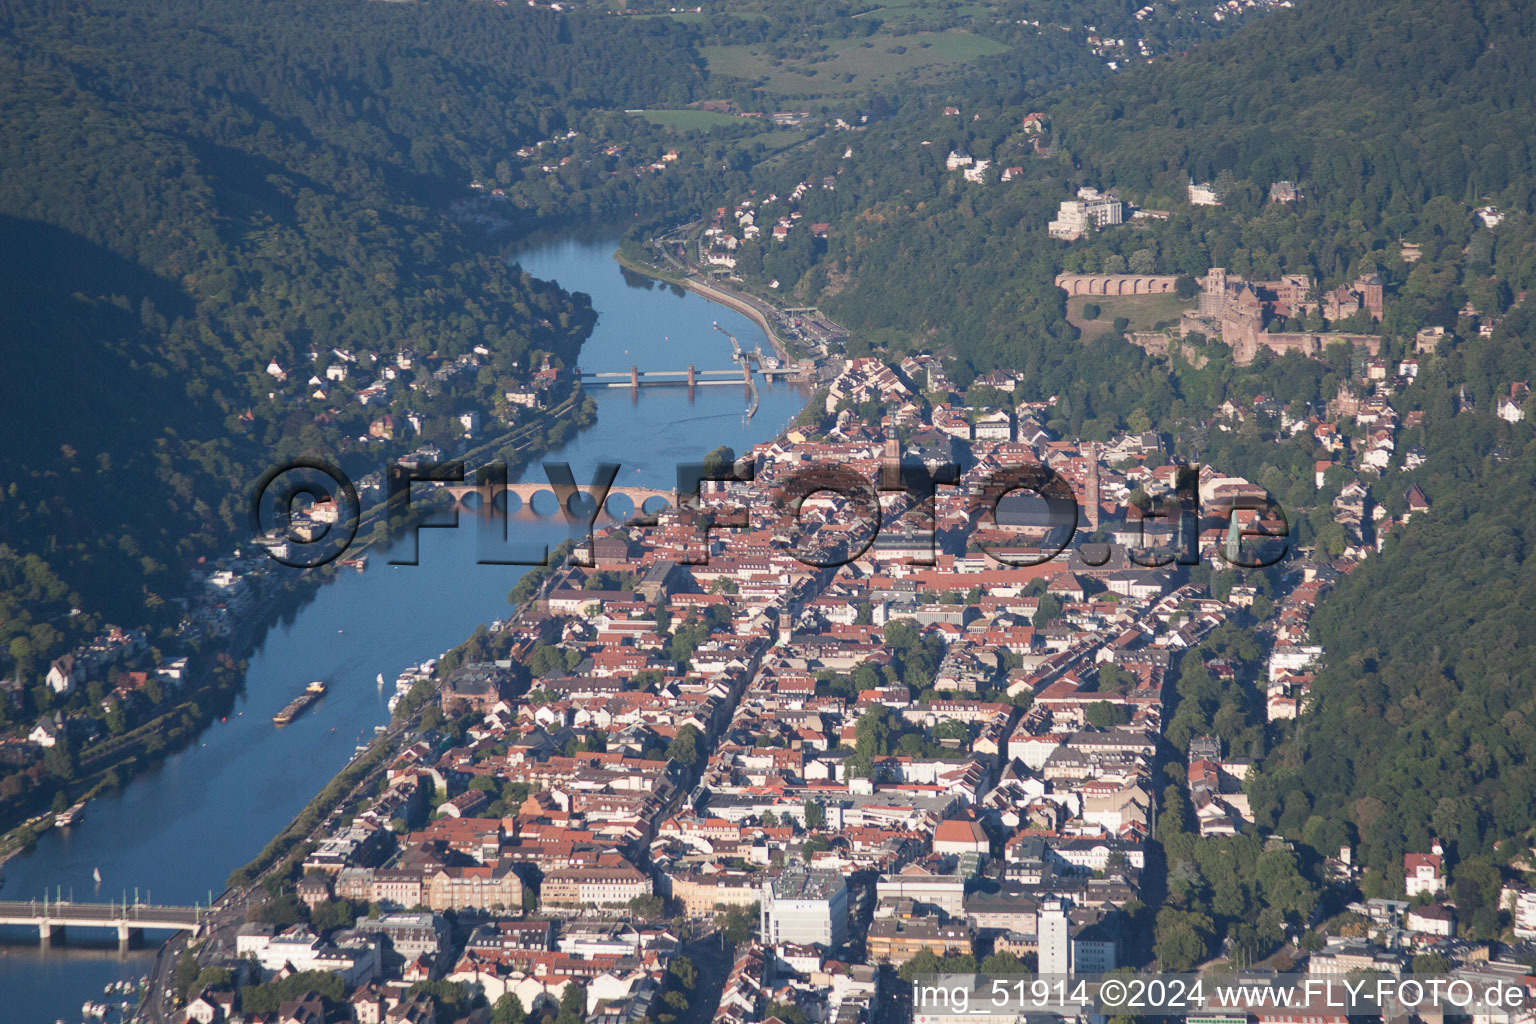 Ortskern am Uferbereich des Neckar im Neckartal - Flußverlaufes in Heidelberg im Ortsteil Voraltstadt im Bundesland Baden-Württemberg, Deutschland